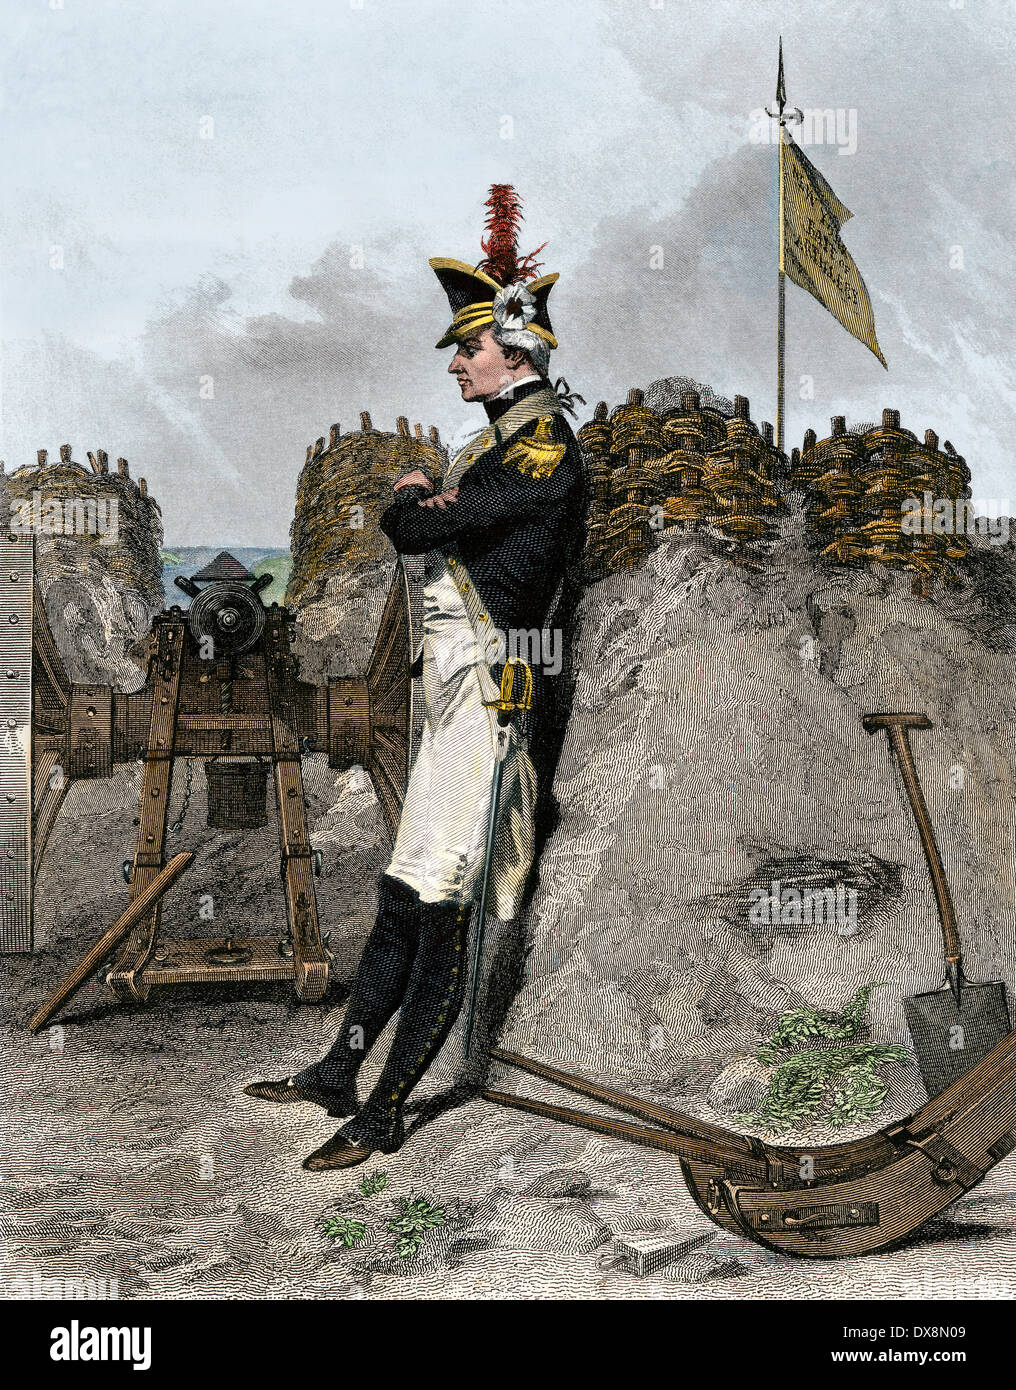 Alexander Hamilton als Artillerieoffizier in der amerikanischen Revolution. Handcolorierte Stahlstich Stockfoto